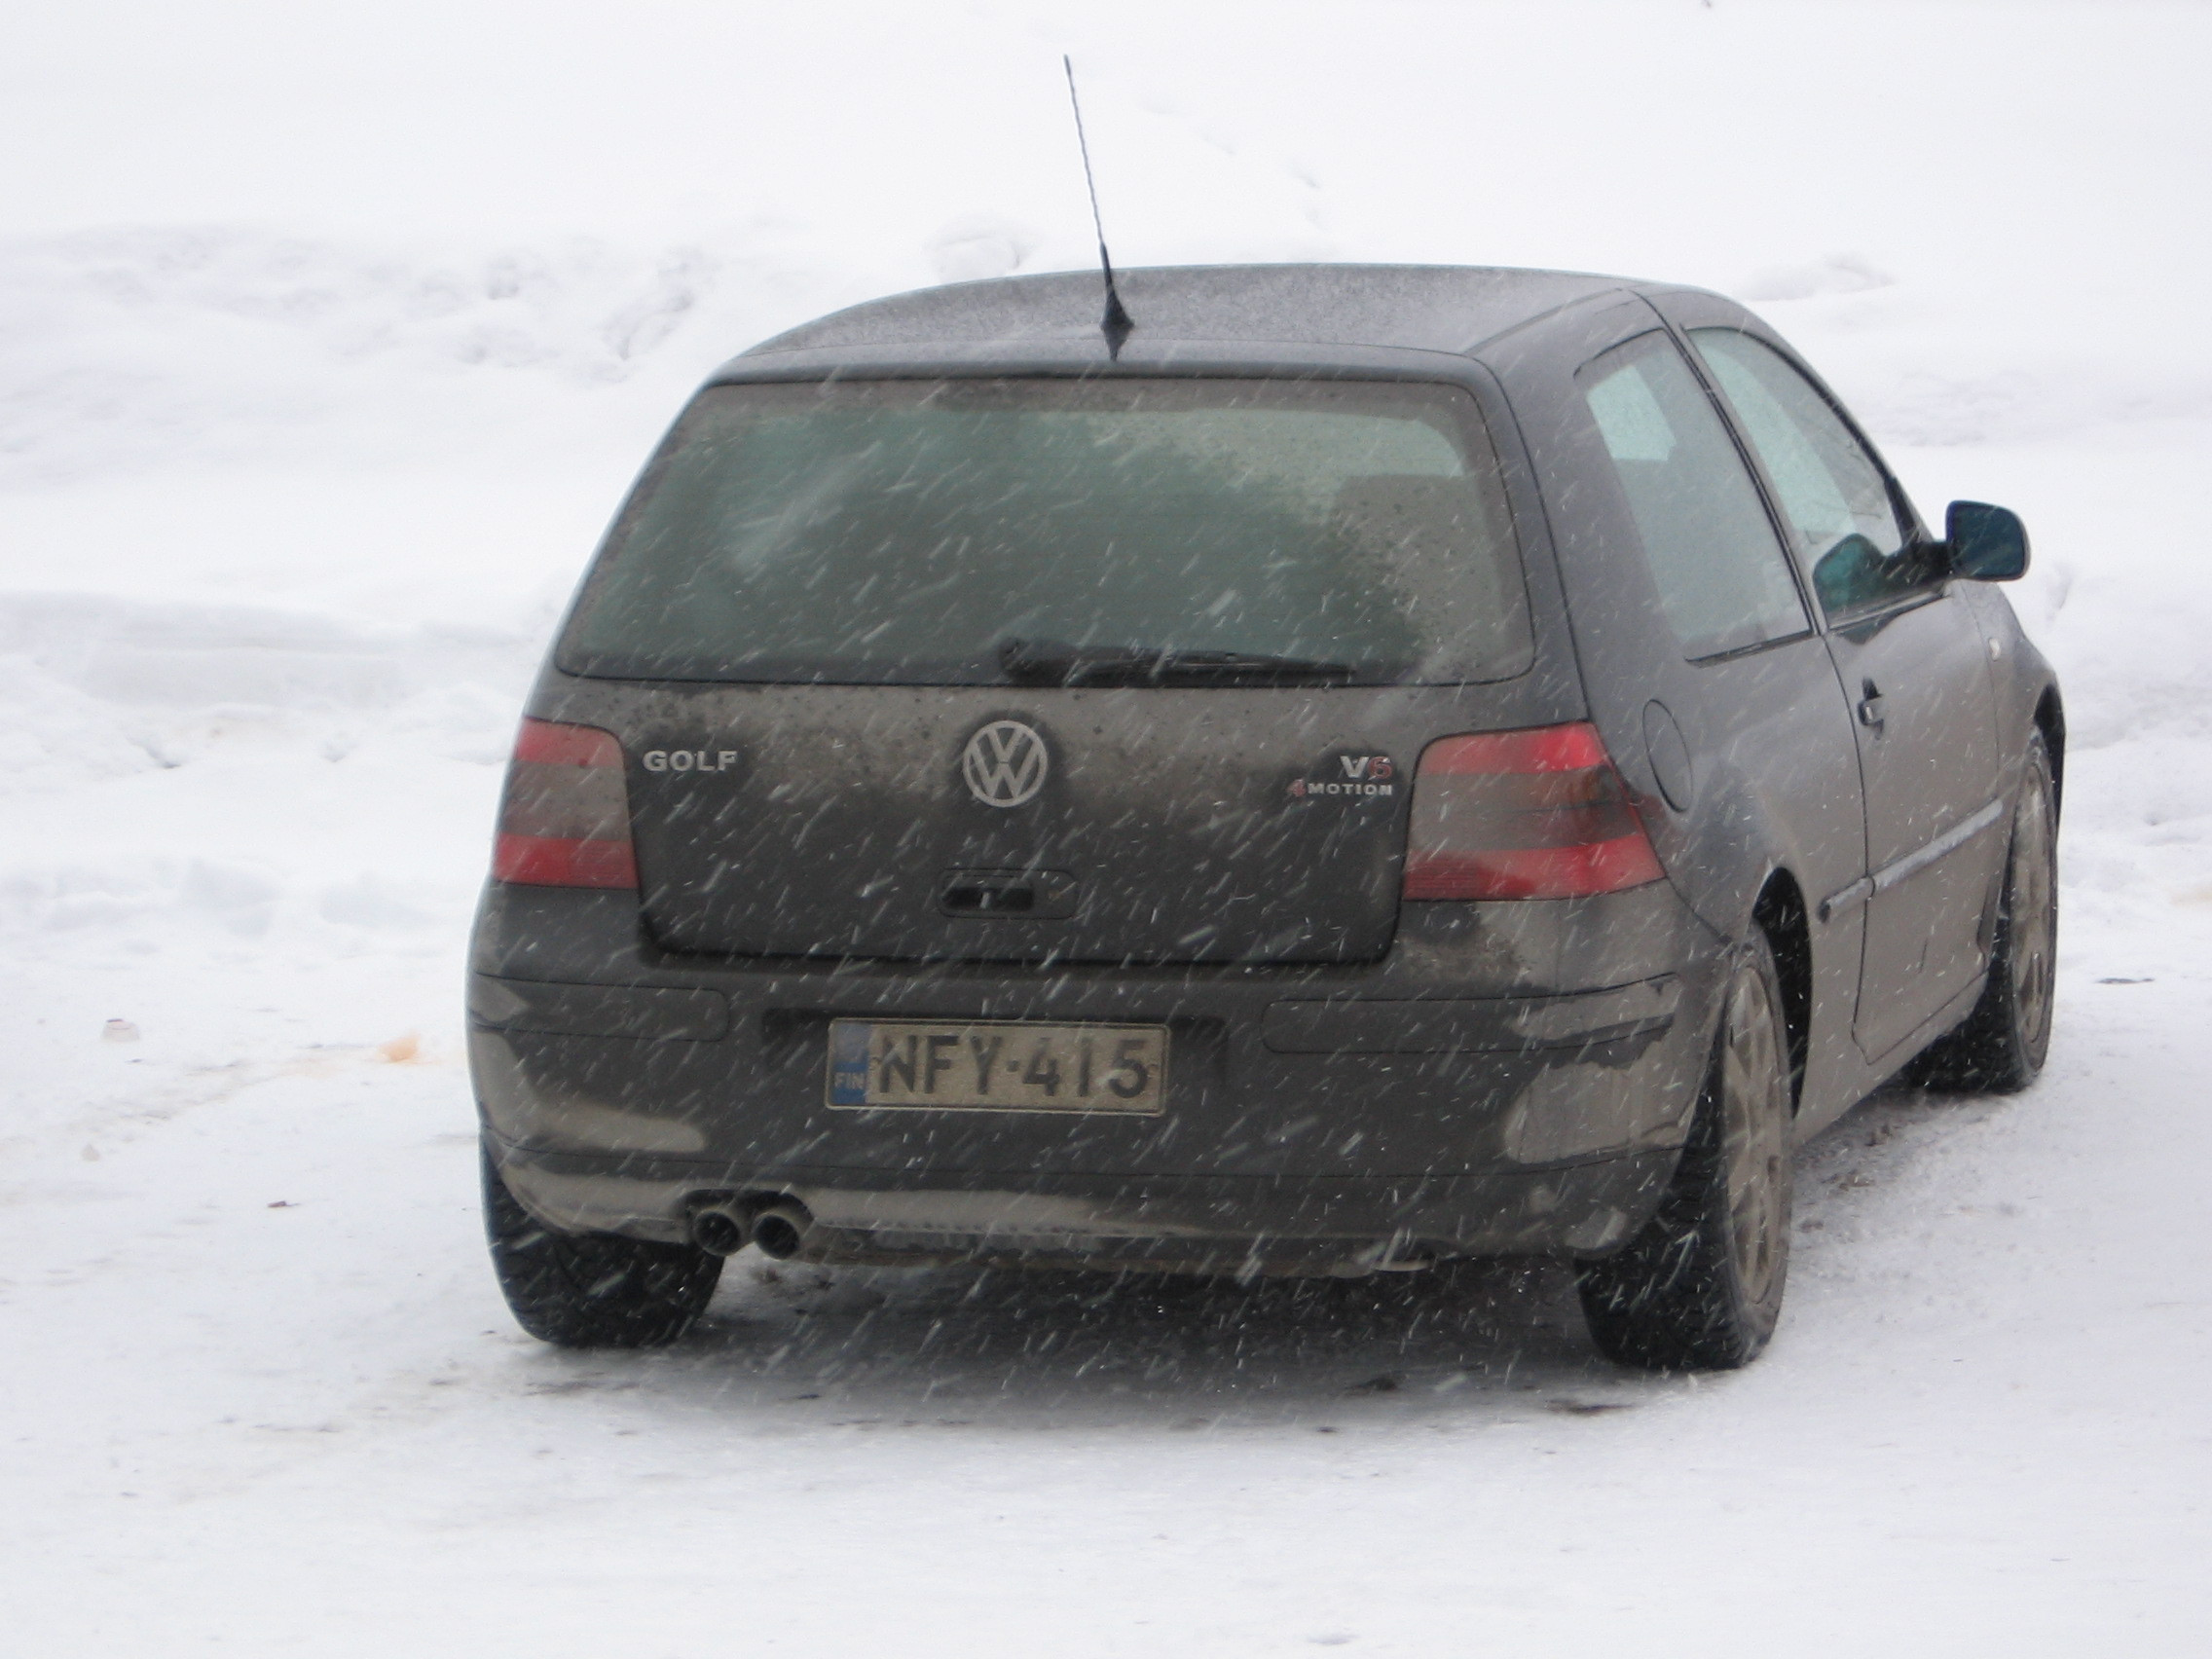 X-treme On Ice 2 18.3.2006 HyvinkÃ¤Ã¤, VW Golf V6 4motion